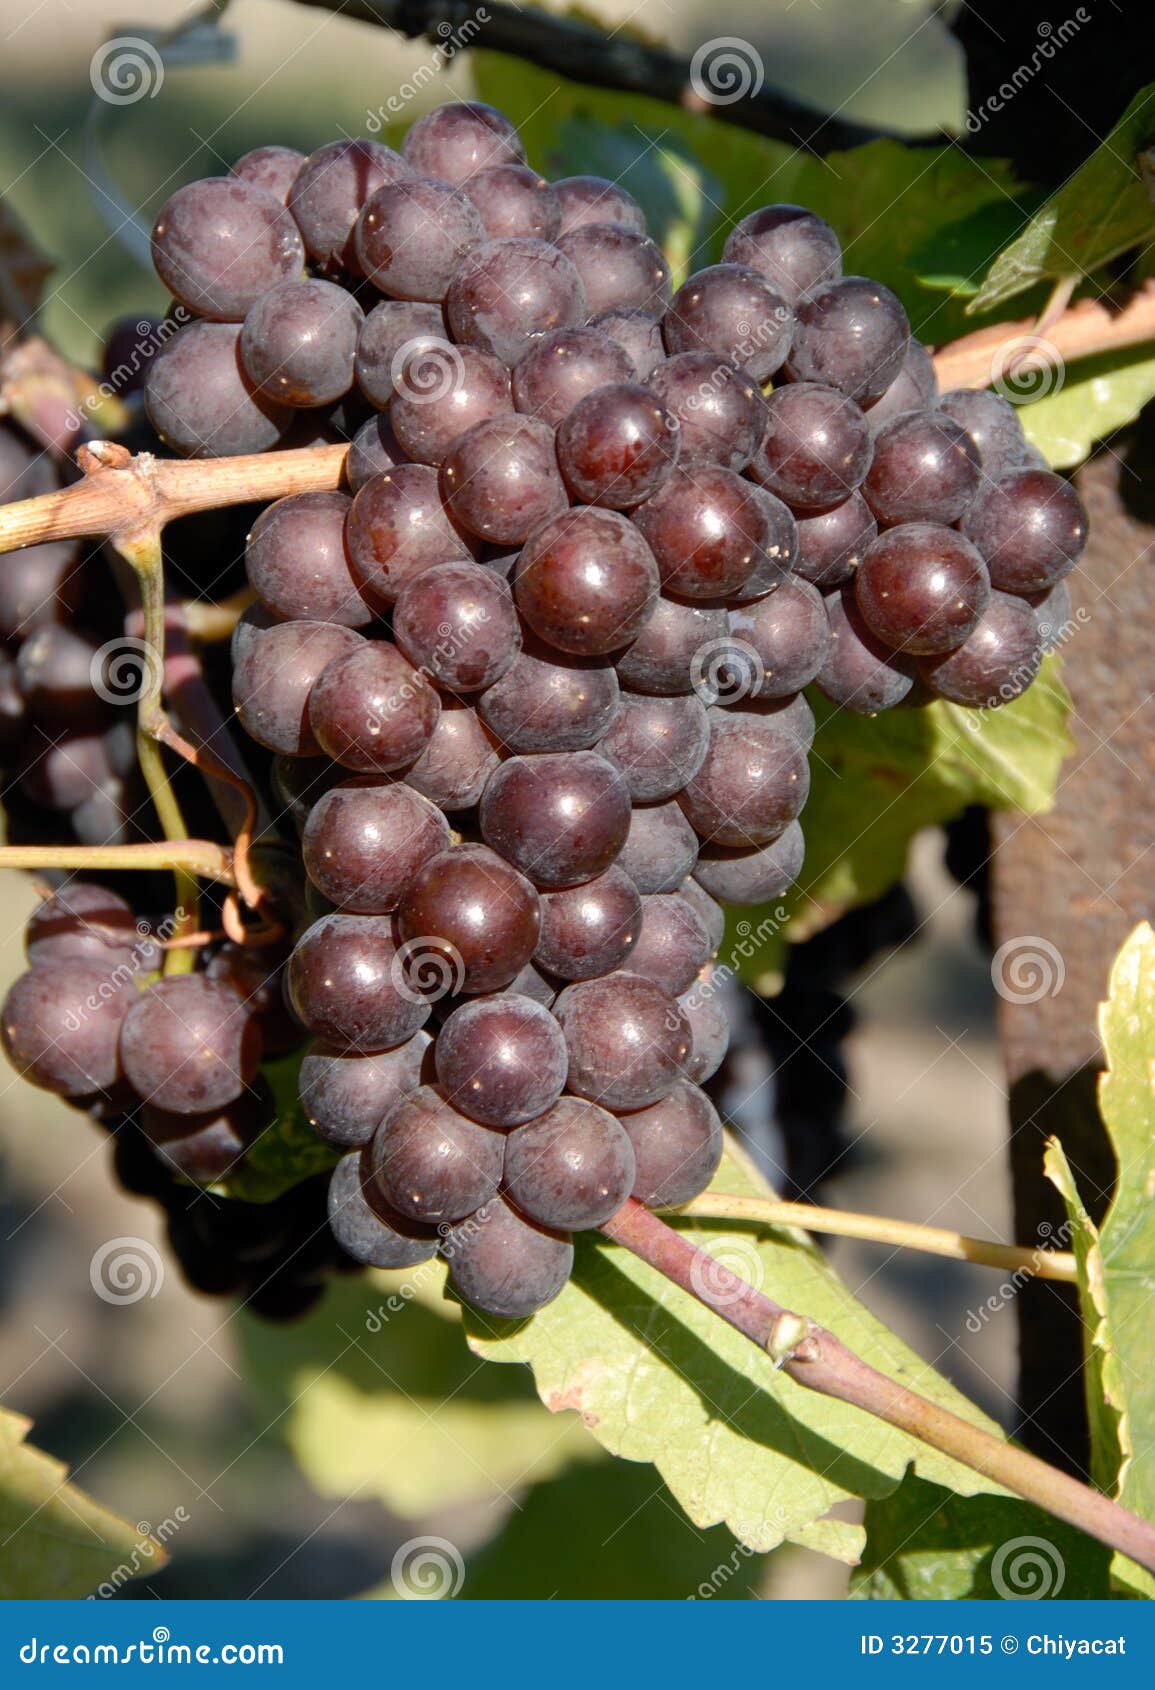 pinot gris/grigio grapes